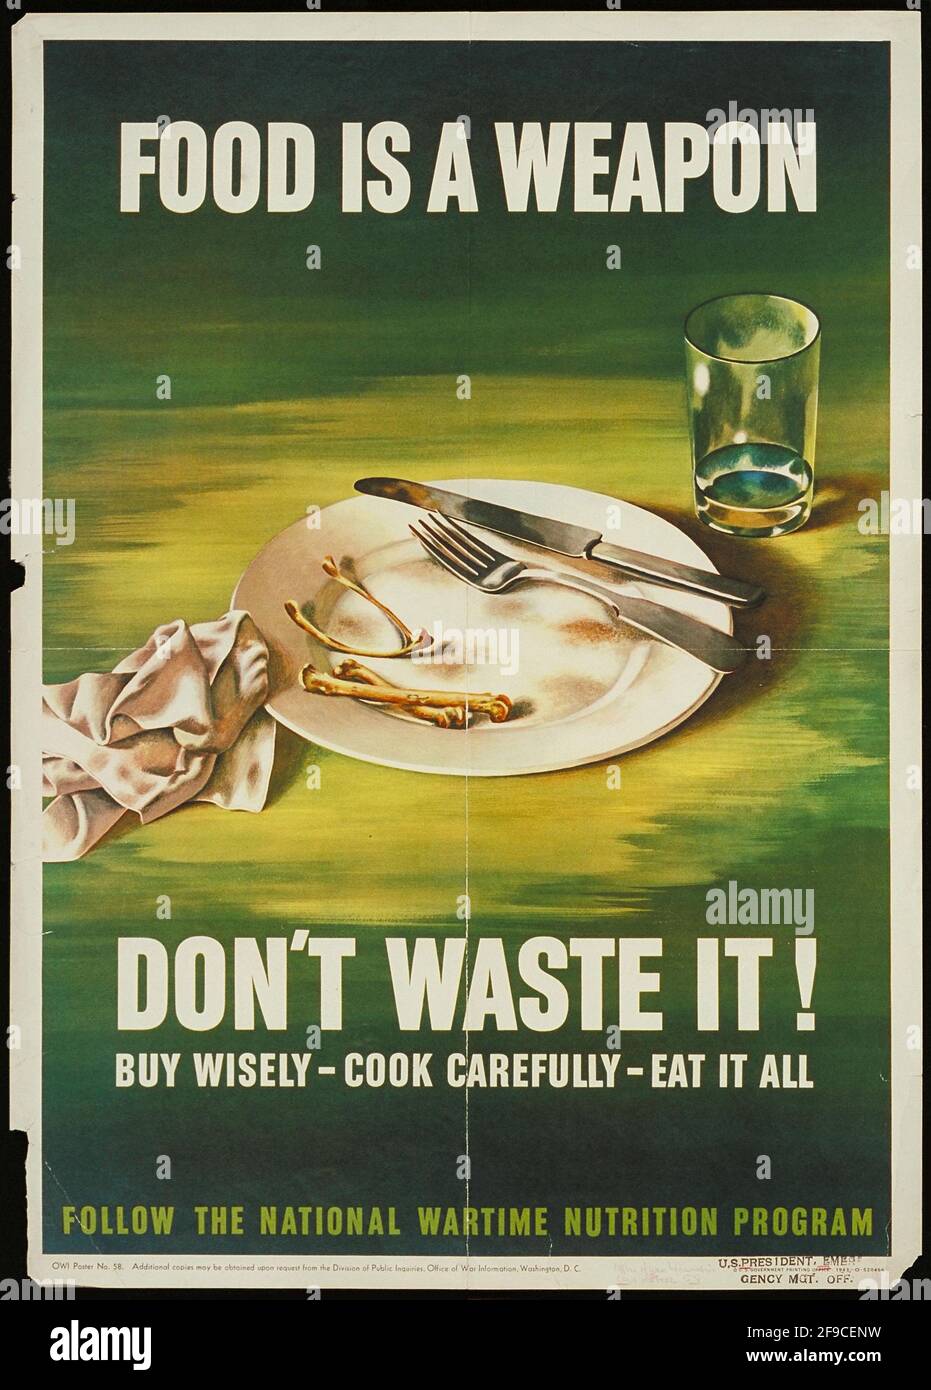 Ein amerikanisches Plakat aus dem 2. Weltkrieg, das die Reduzierung von Lebensmittelabfällen mit der fördert Slogan Essen ist eine Waffe Stockfoto